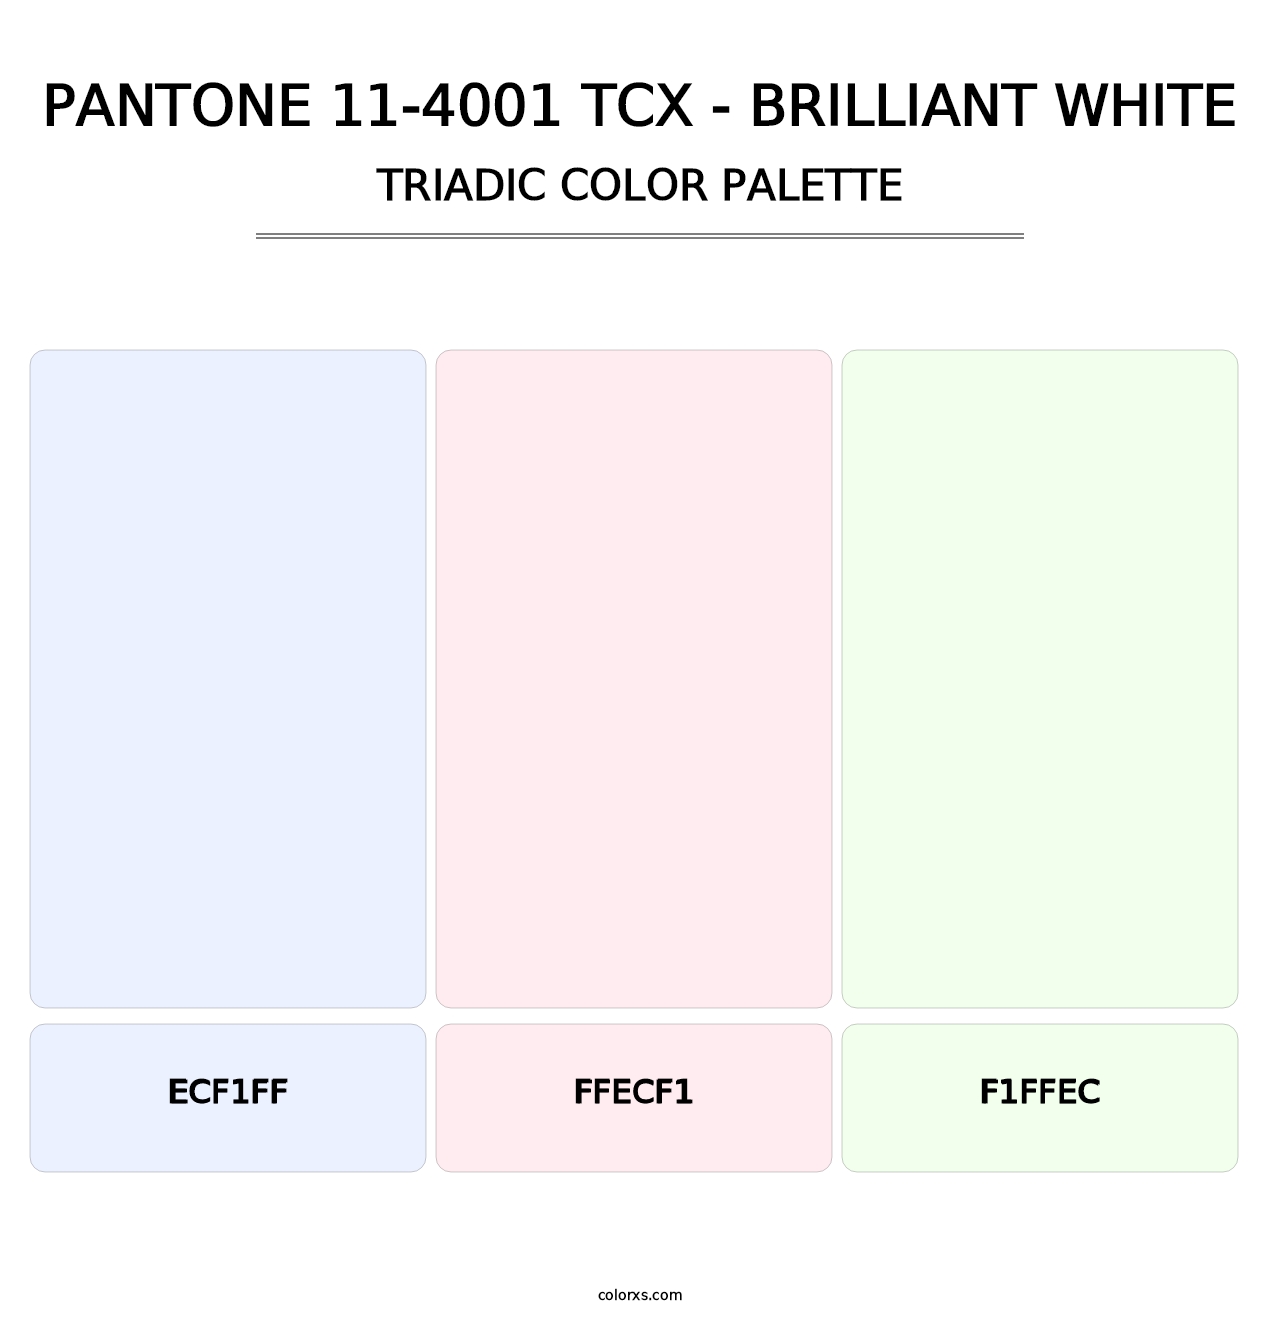 PANTONE 11-4001 TCX - Brilliant White - Triadic Color Palette